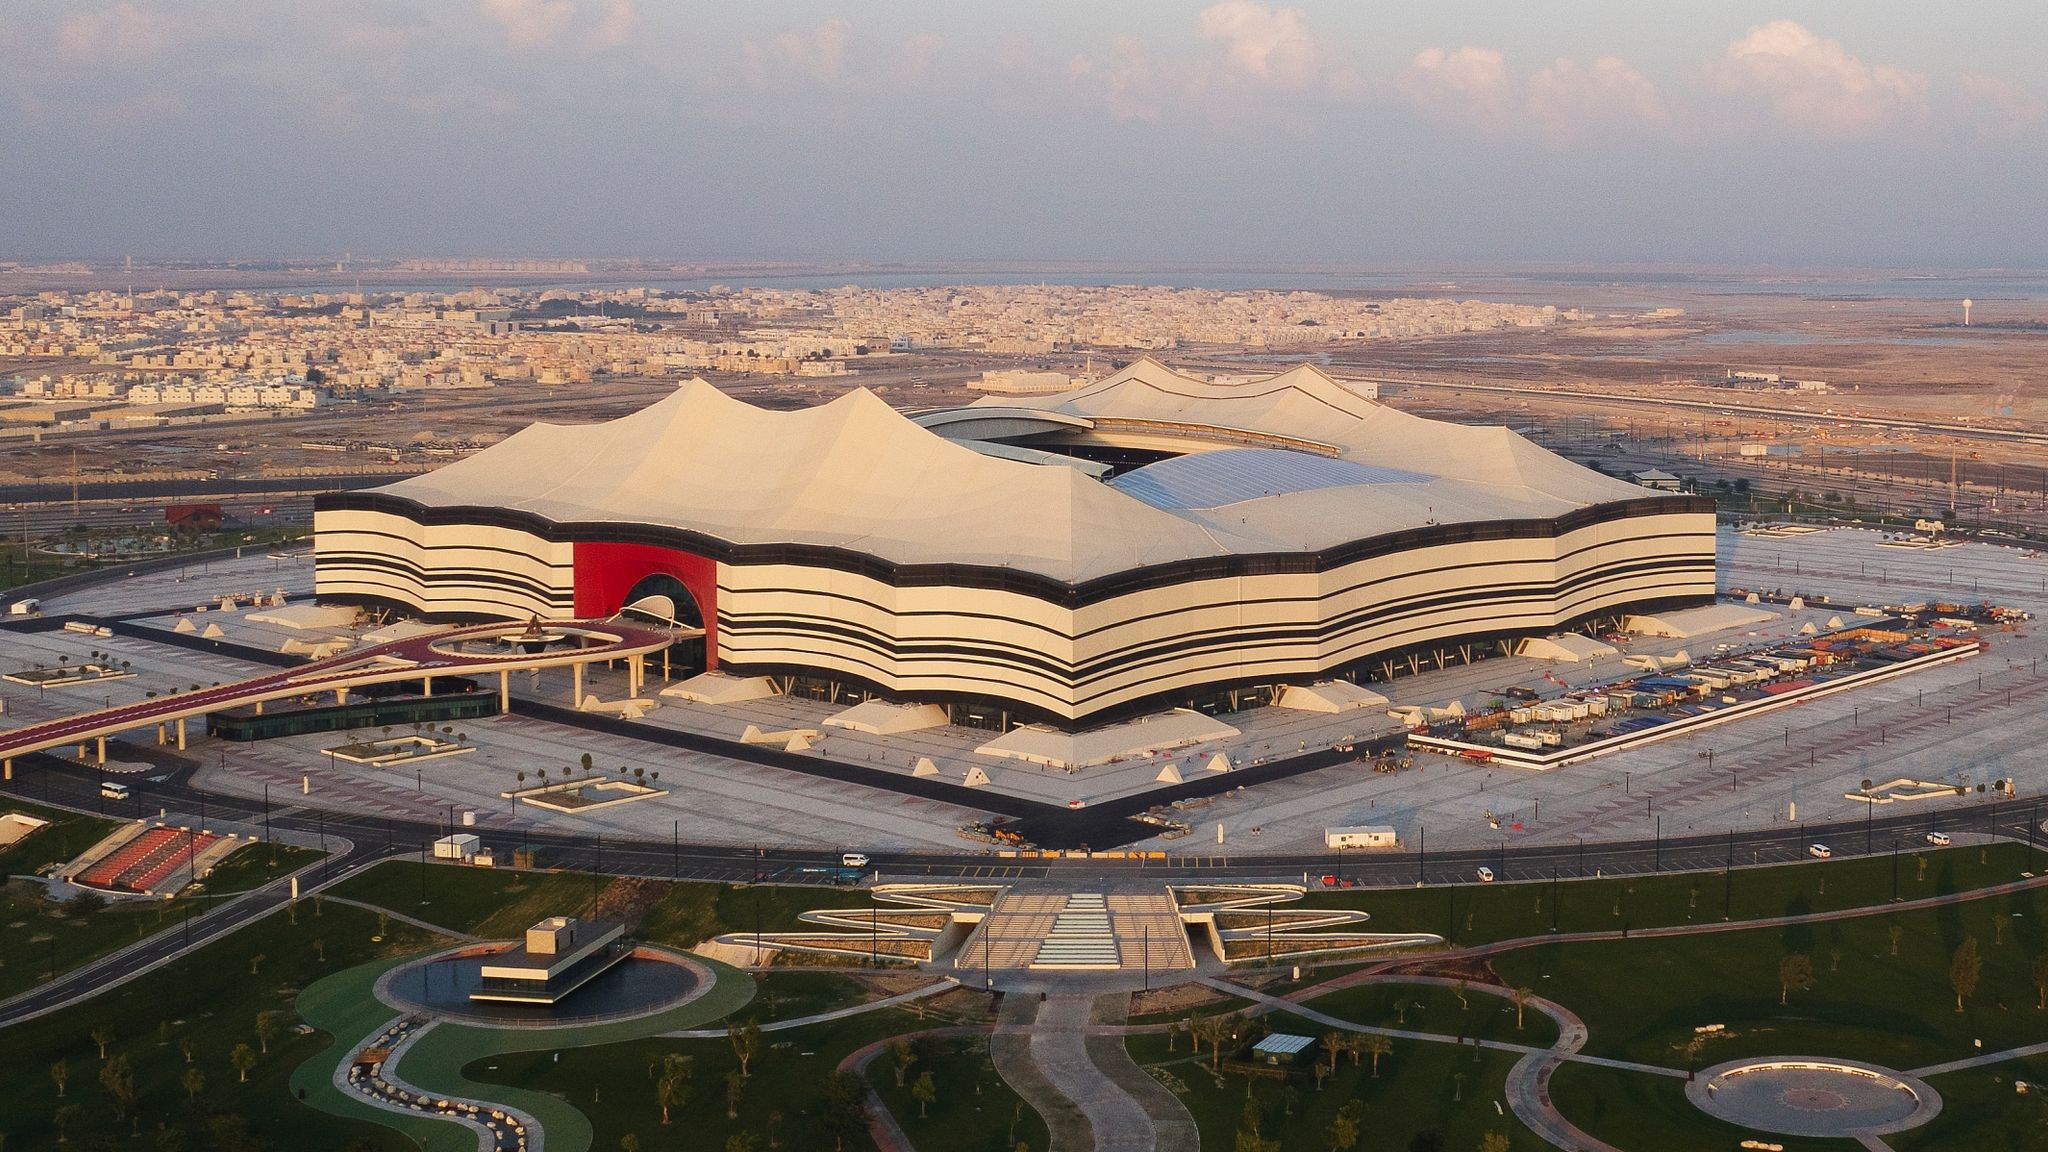 2022 Dünya Kupası Katar'da kullanılacak yeni teknolojiler neler?